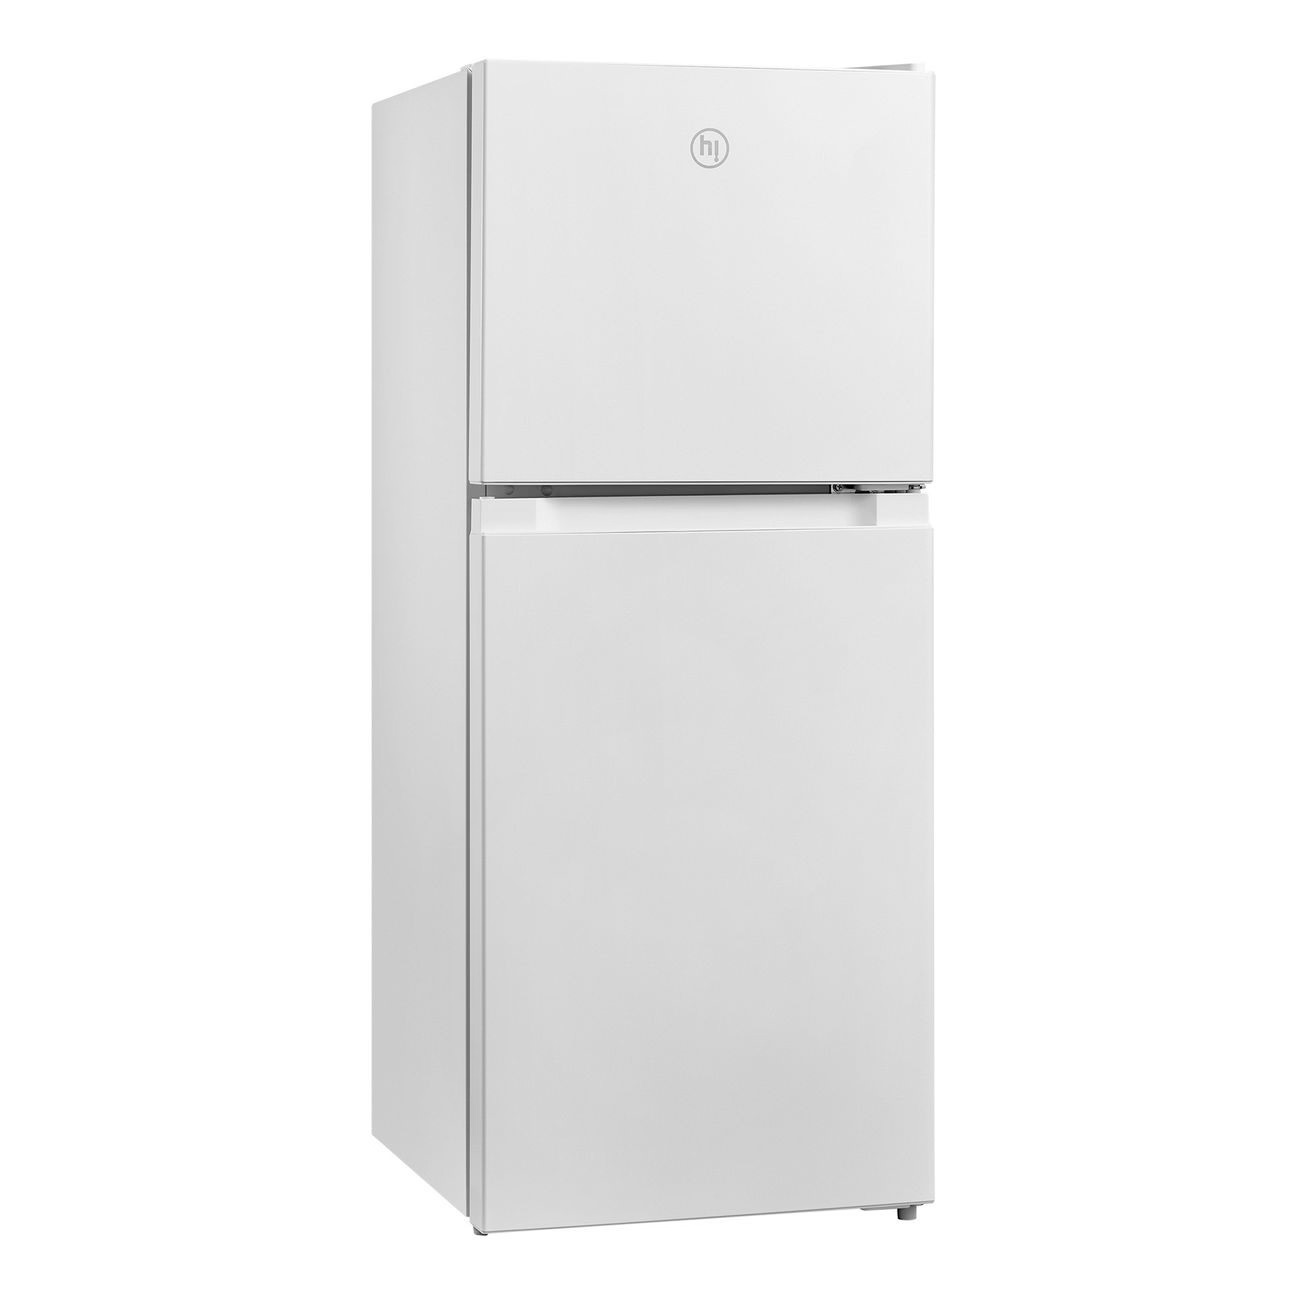 Холодильник Hi HTDN011950RW белый холодильник haier c2f636cwrg белый